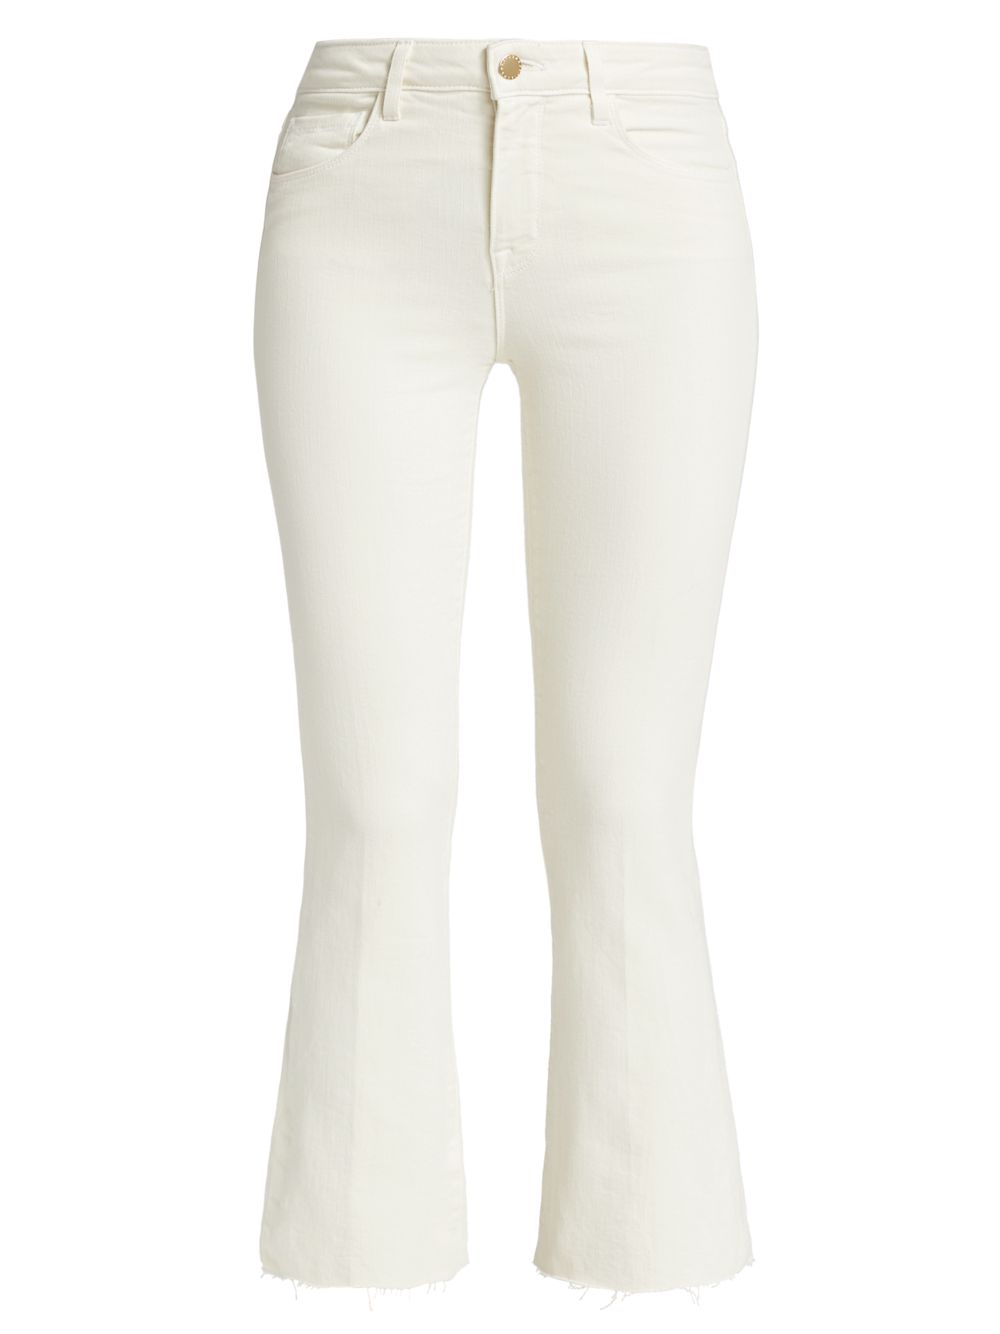 Расклешенные джинсы Kendra с высокой посадкой L'AGENCE, белый